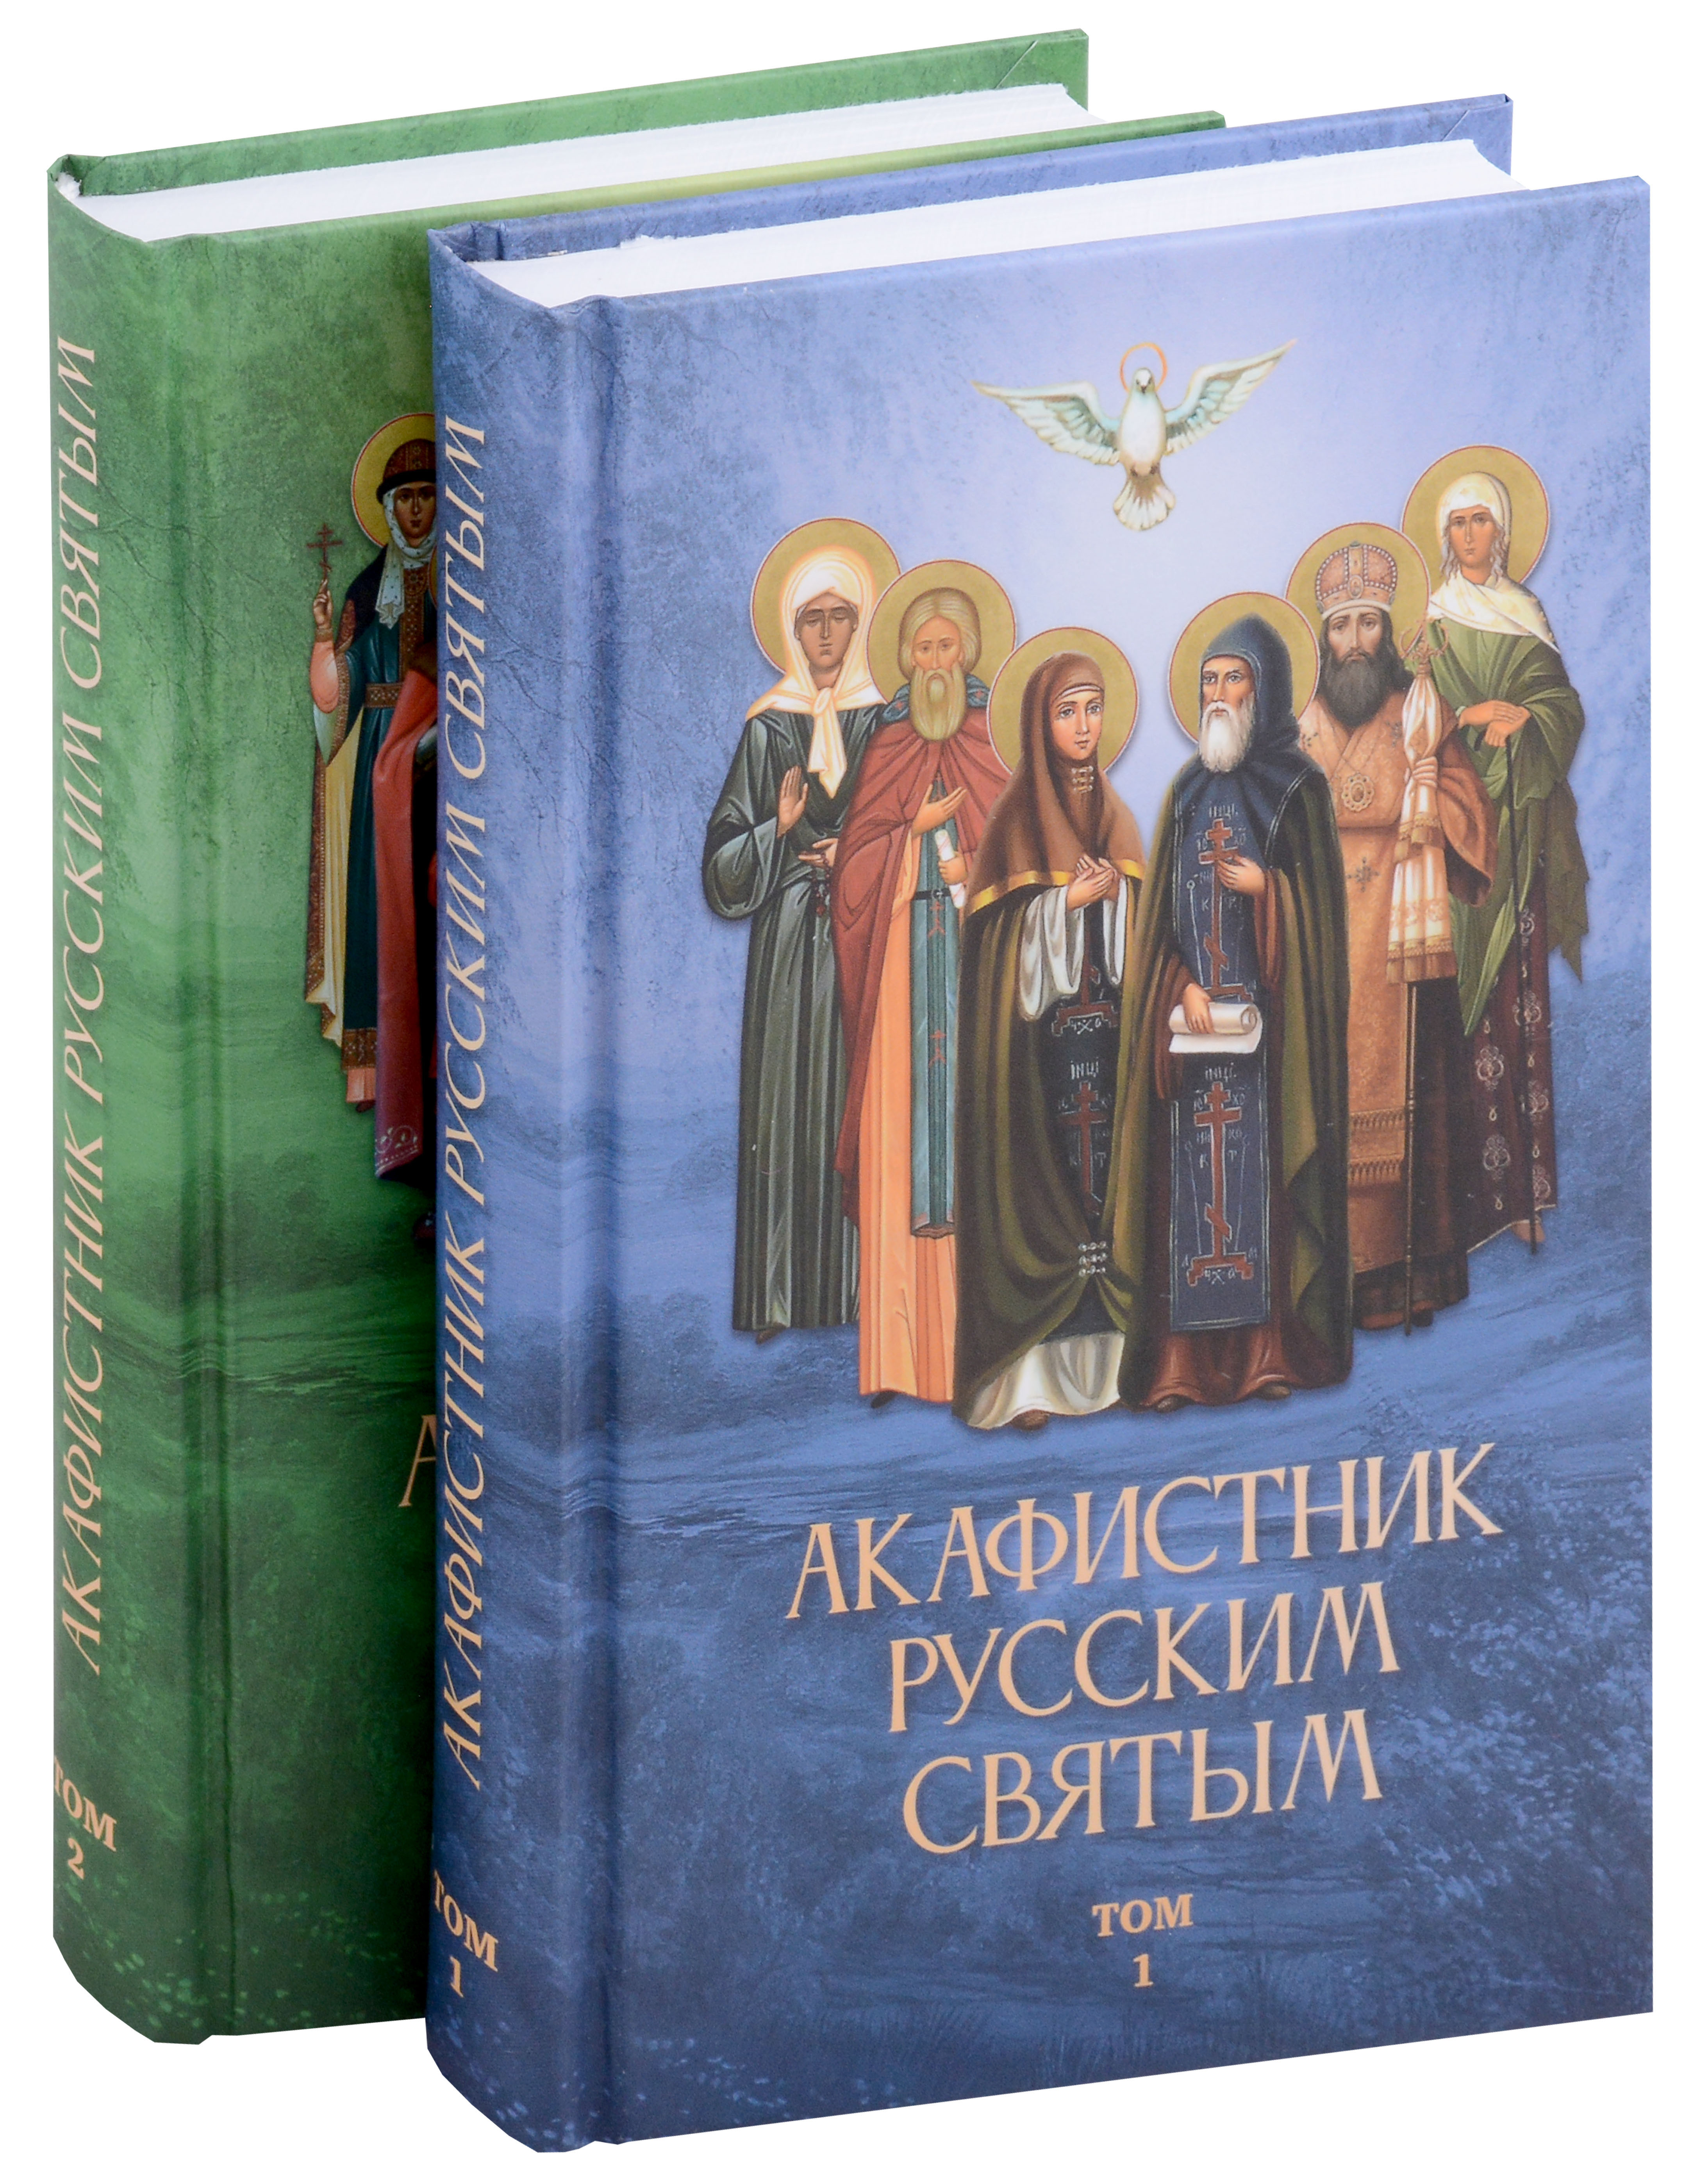 Акафистник русским святым (Комплект из 2 книг)